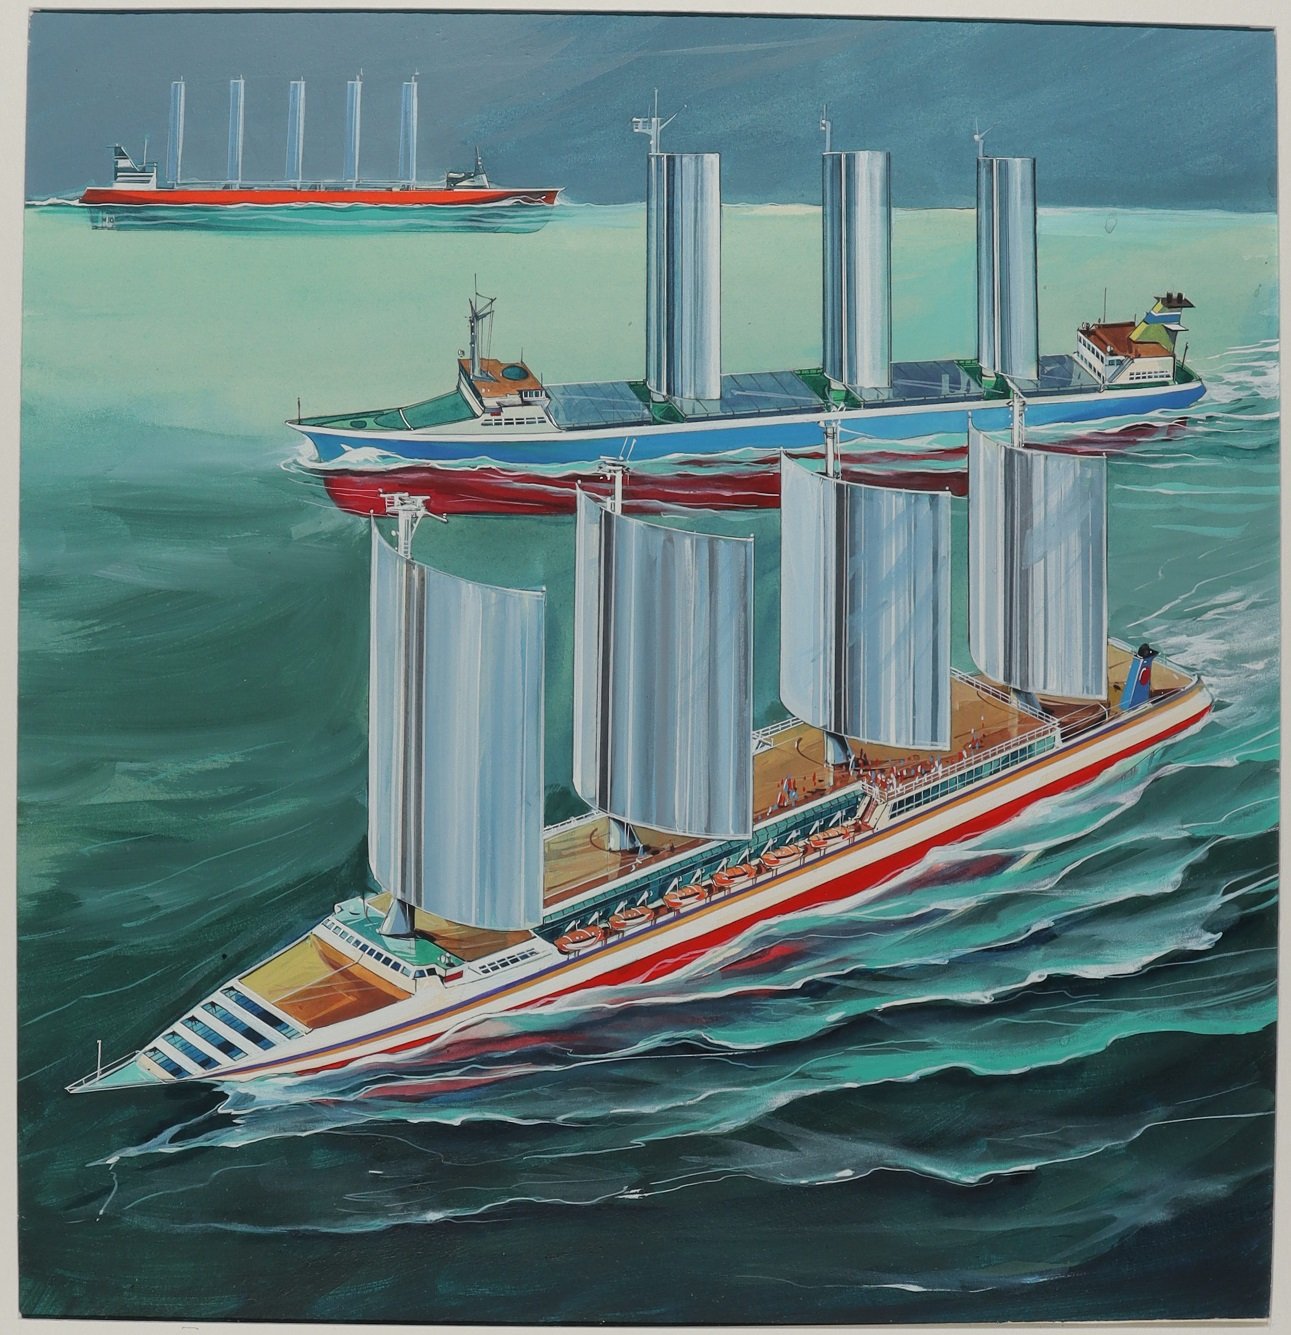 Frachtschiff und Fahrgastschiff mit Segeln (Schiffbau- und Schiffahrtsmuseum Rostock RR-F)